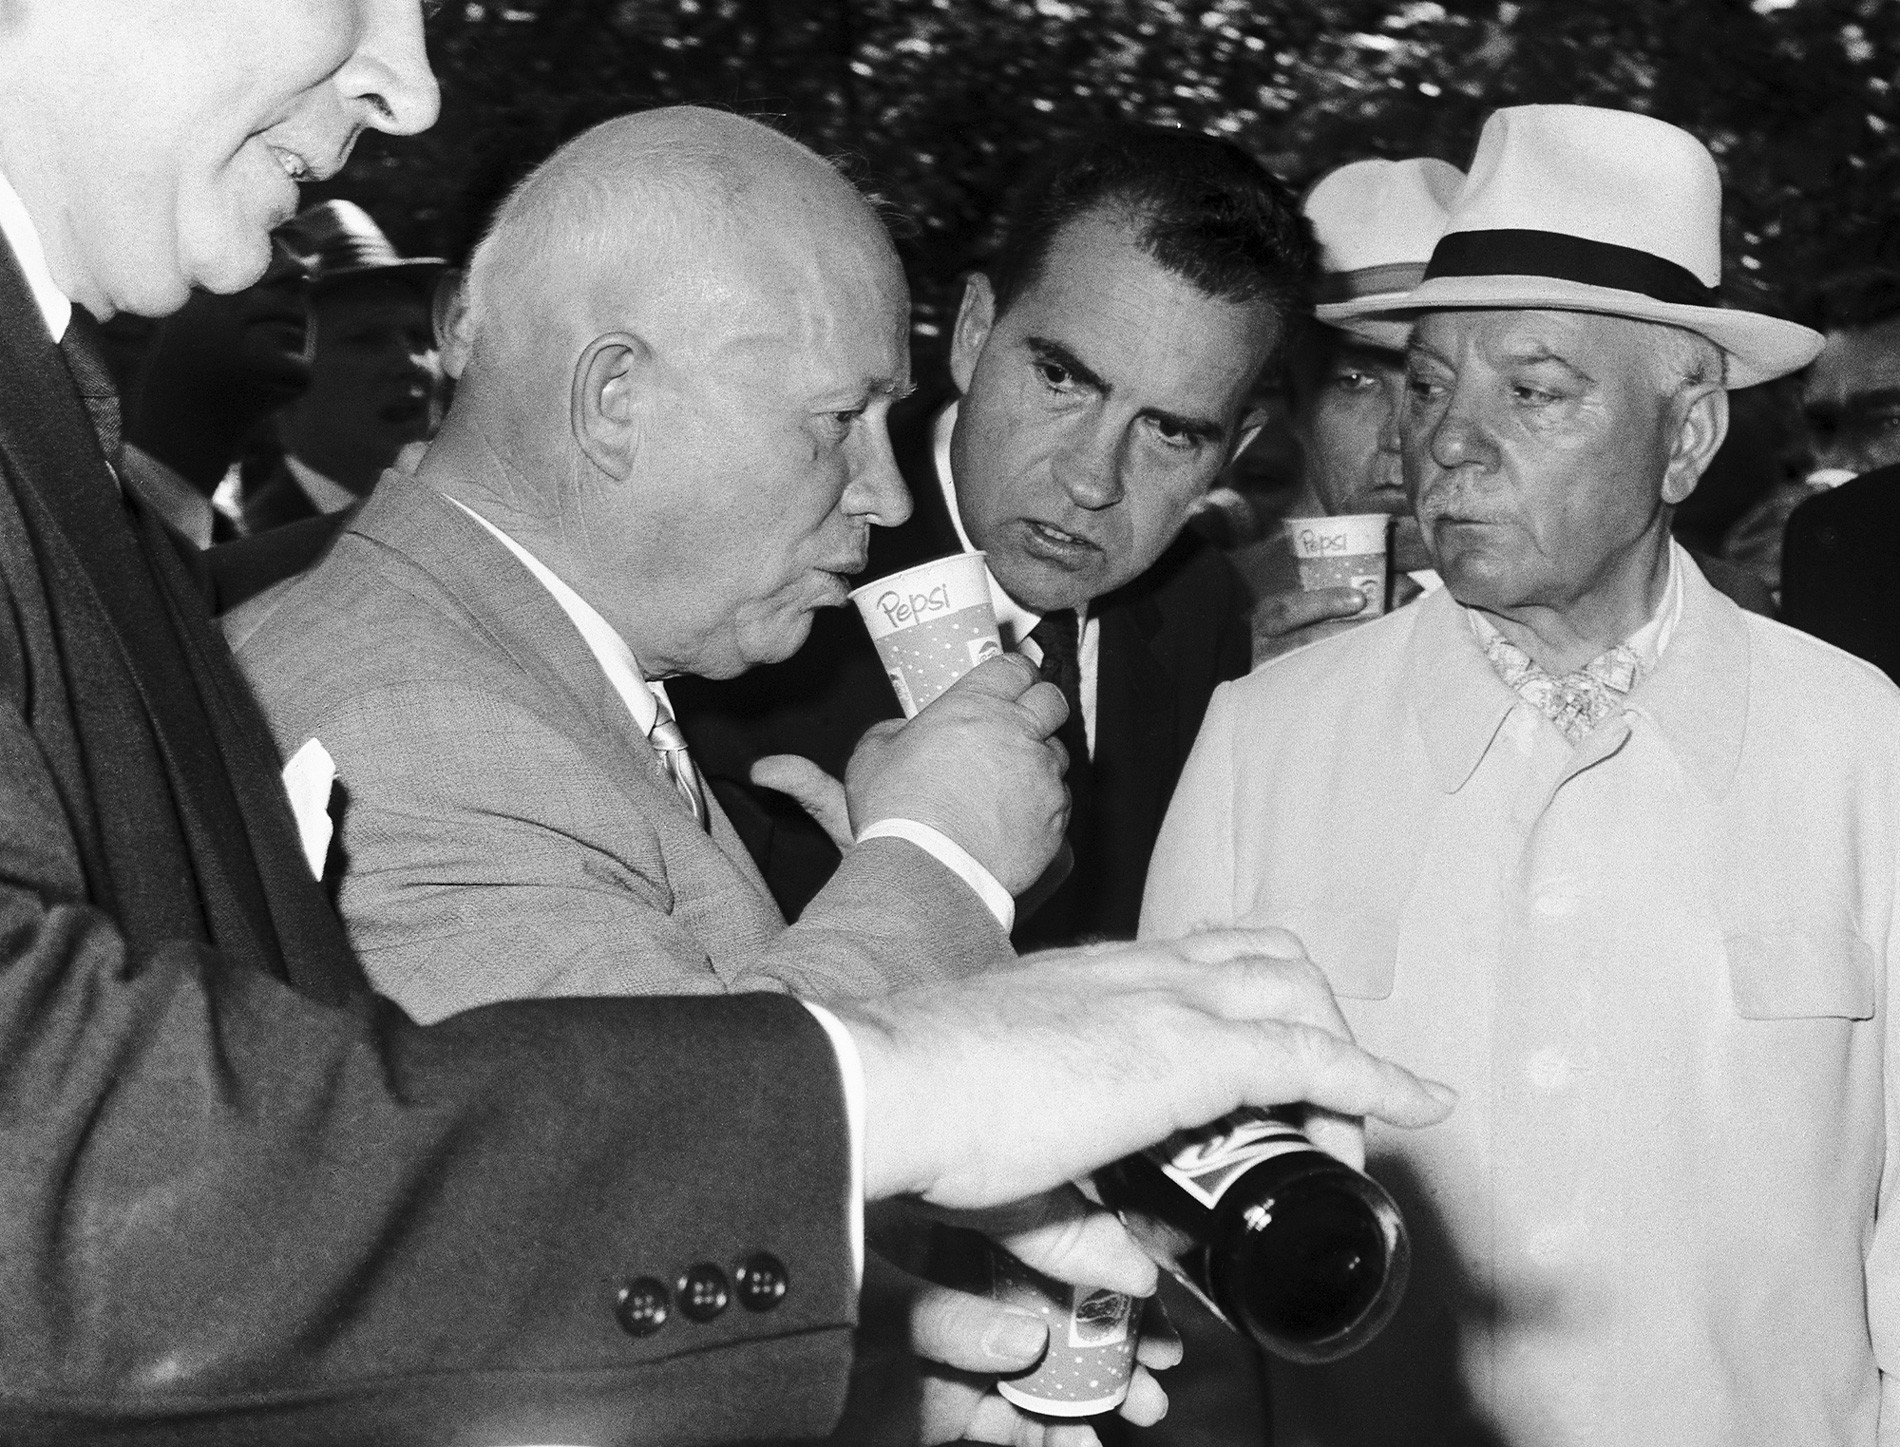 Moskva, Sovjetski Savez. Sovjetski premijer Nikita Hruščov ispija Pepsi pod budnim okom dopredsjednika SAD-a Richarda Nixona (u centru) i predsjednika SSSR-a Klimenta Vorošilova (desno) u parku 